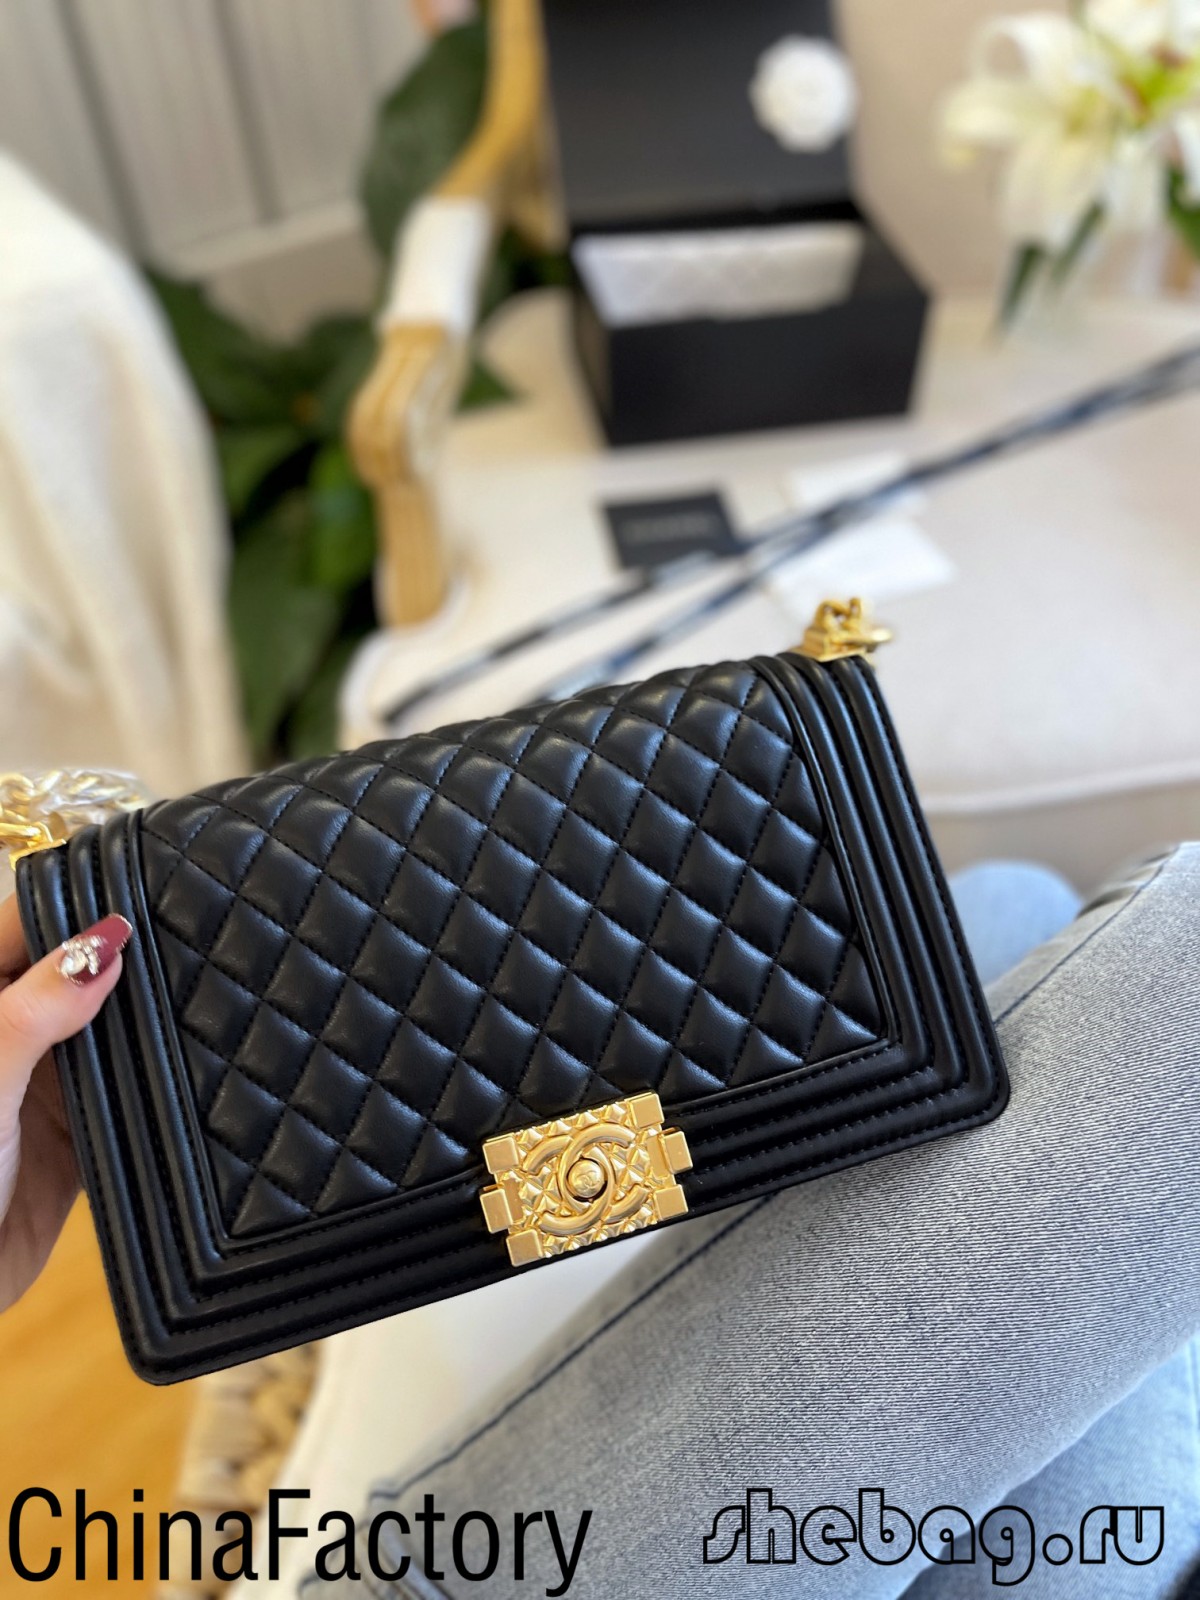 Kualitas terbaik 2.55 sumber replika tas Chanel di China (diperbarui pada tahun 2022) - Toko Online Tas Louis Vuitton Palsu Kualitas Terbaik, tas desainer replika ru